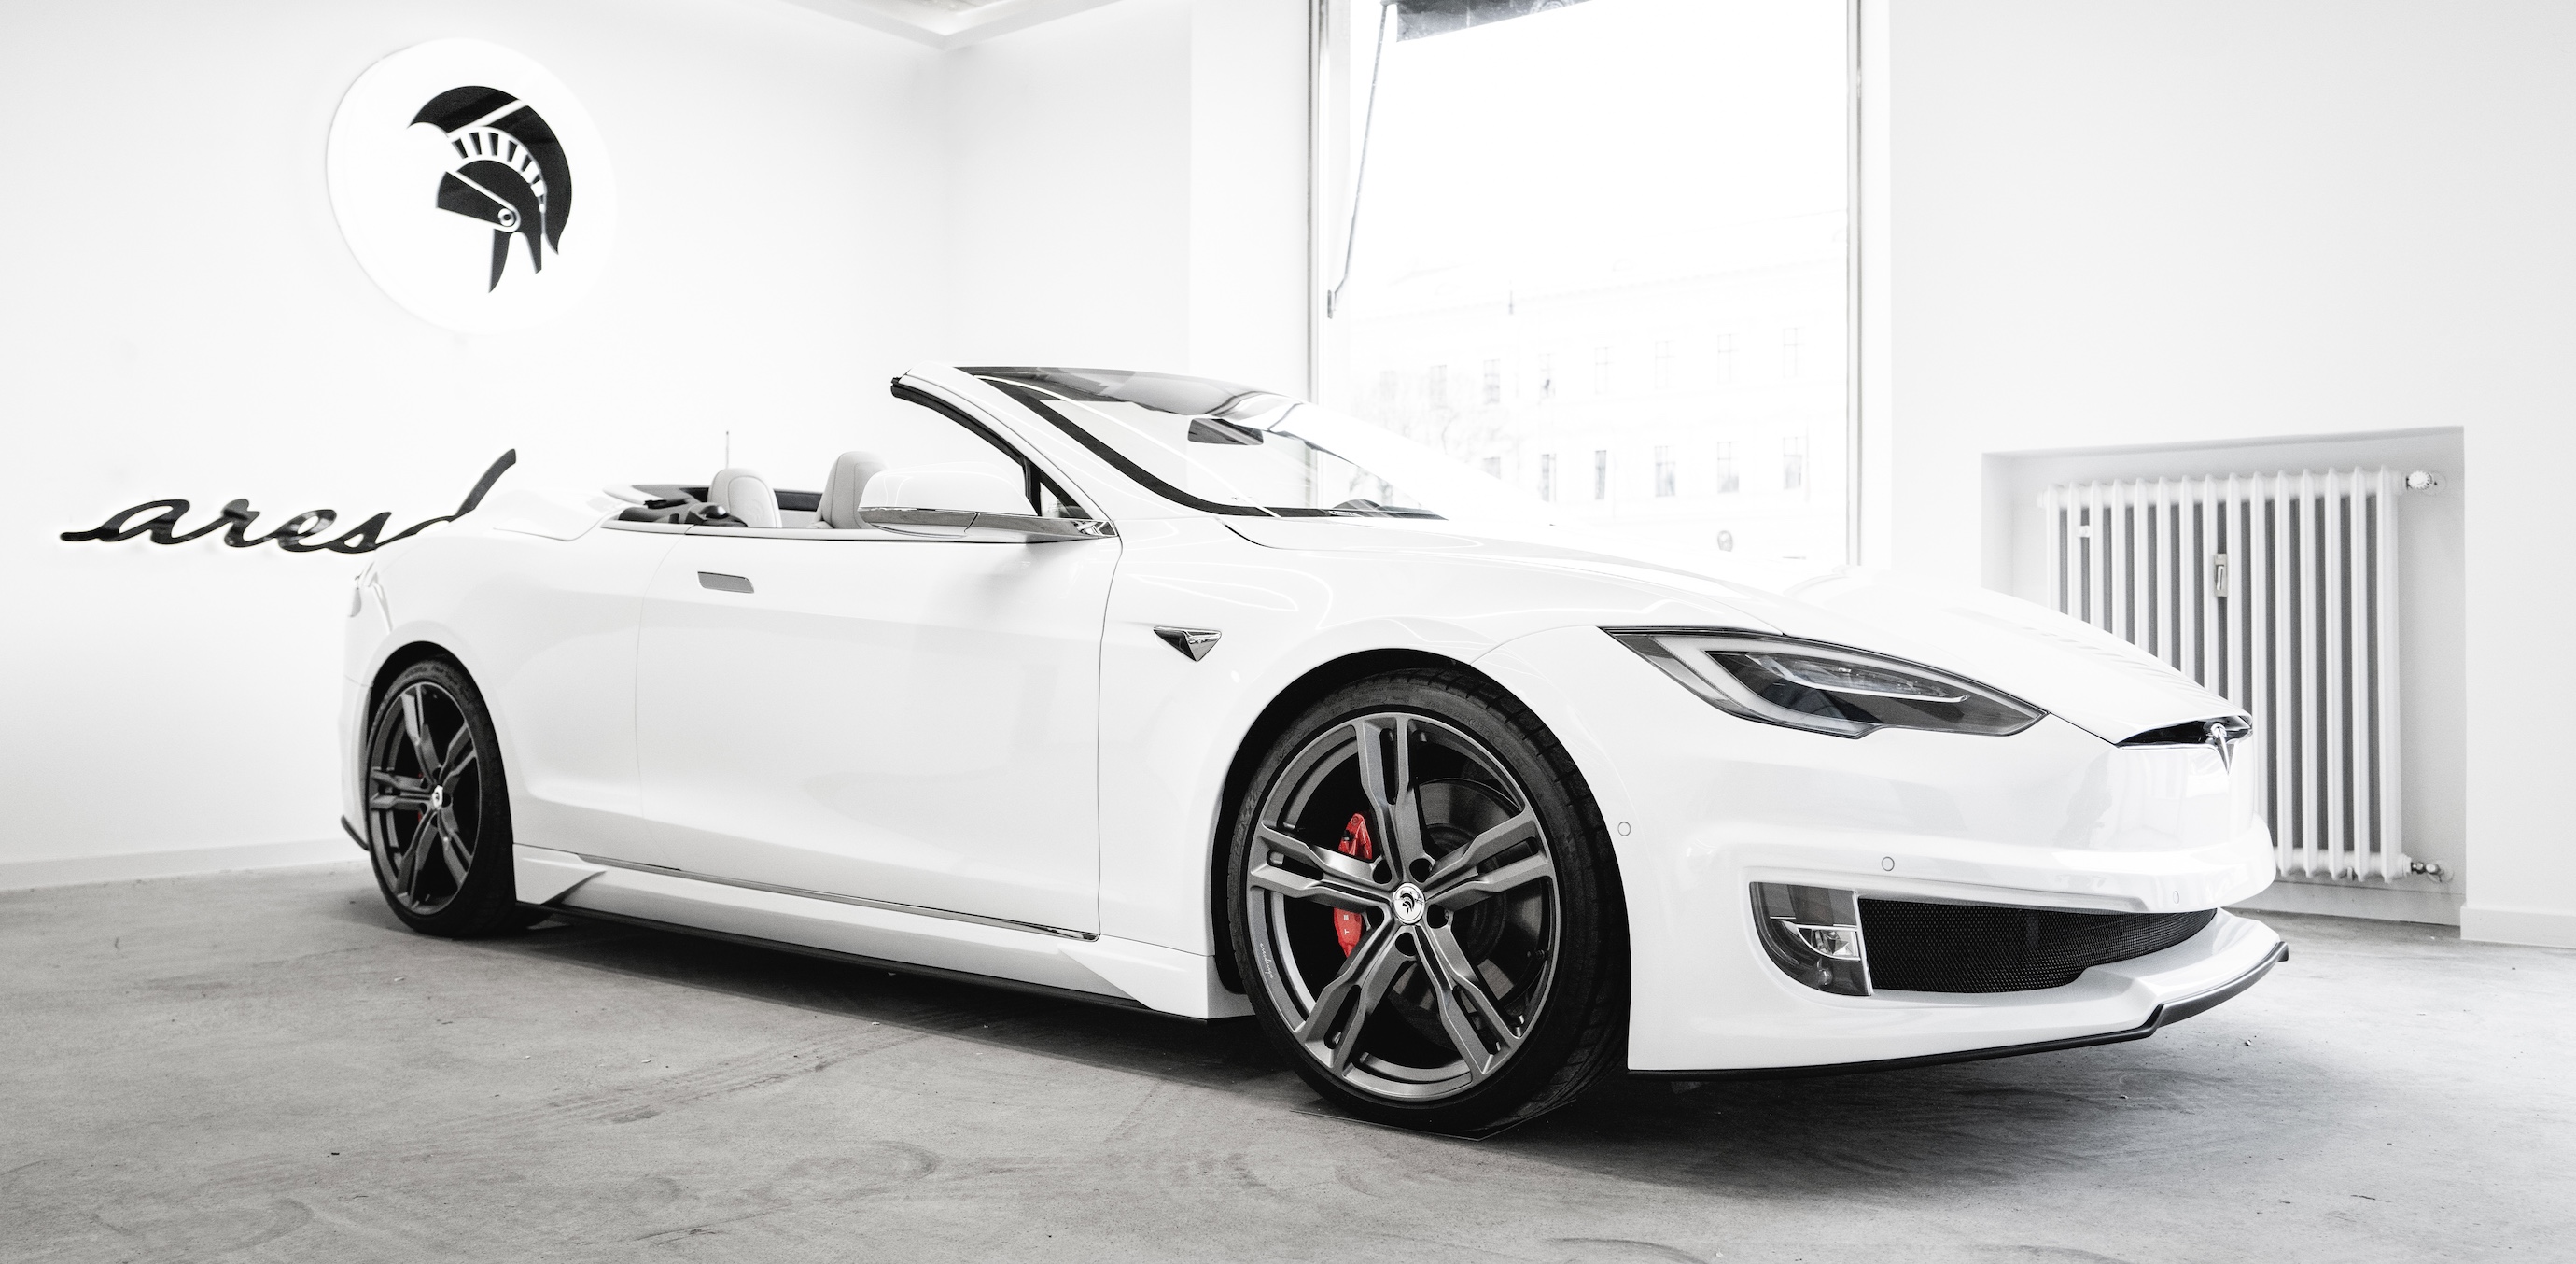 Verdorren Zuigeling Een centrale tool die een belangrijke rol speelt Tesla Model S is turned into 2-door convertible and actually looks good -  Electrek